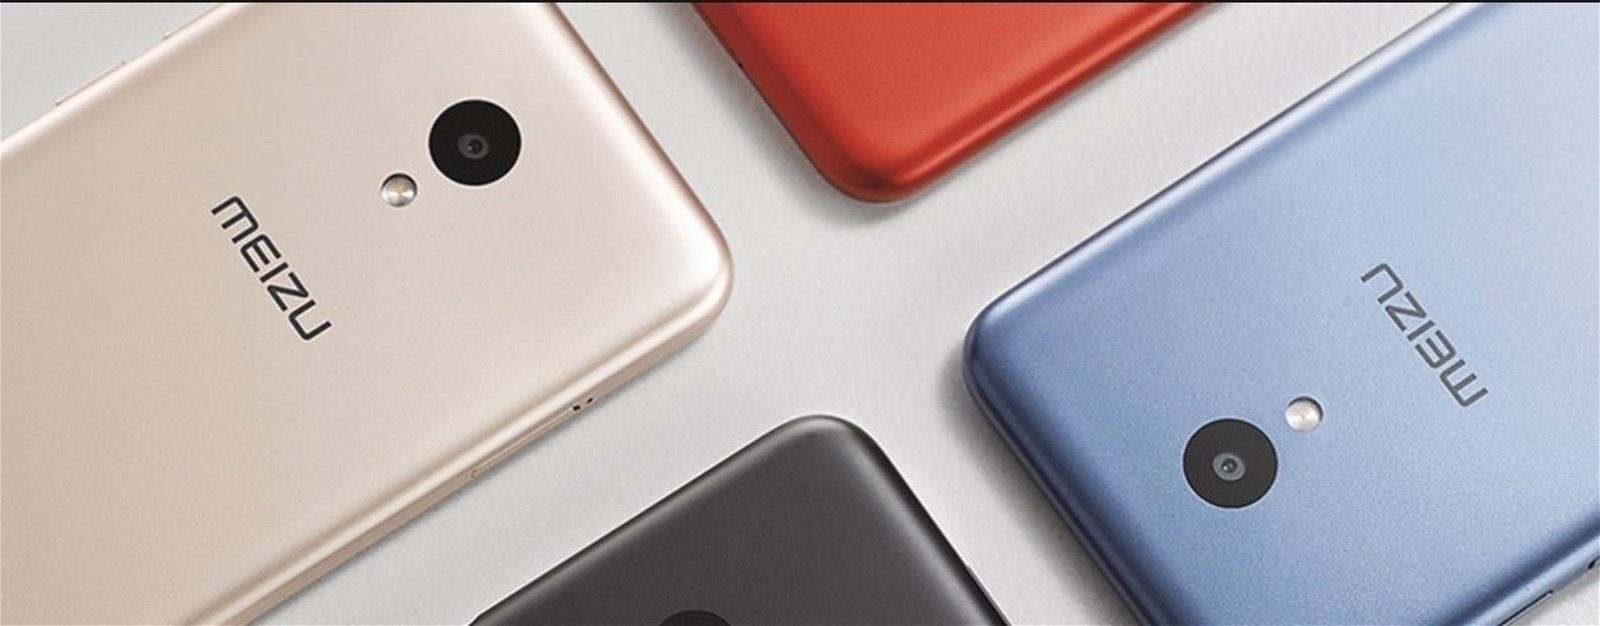 Nuevo Meizu M8c, un colorido rival para el Xiaomi Redmi 5 por menos de 140 euros